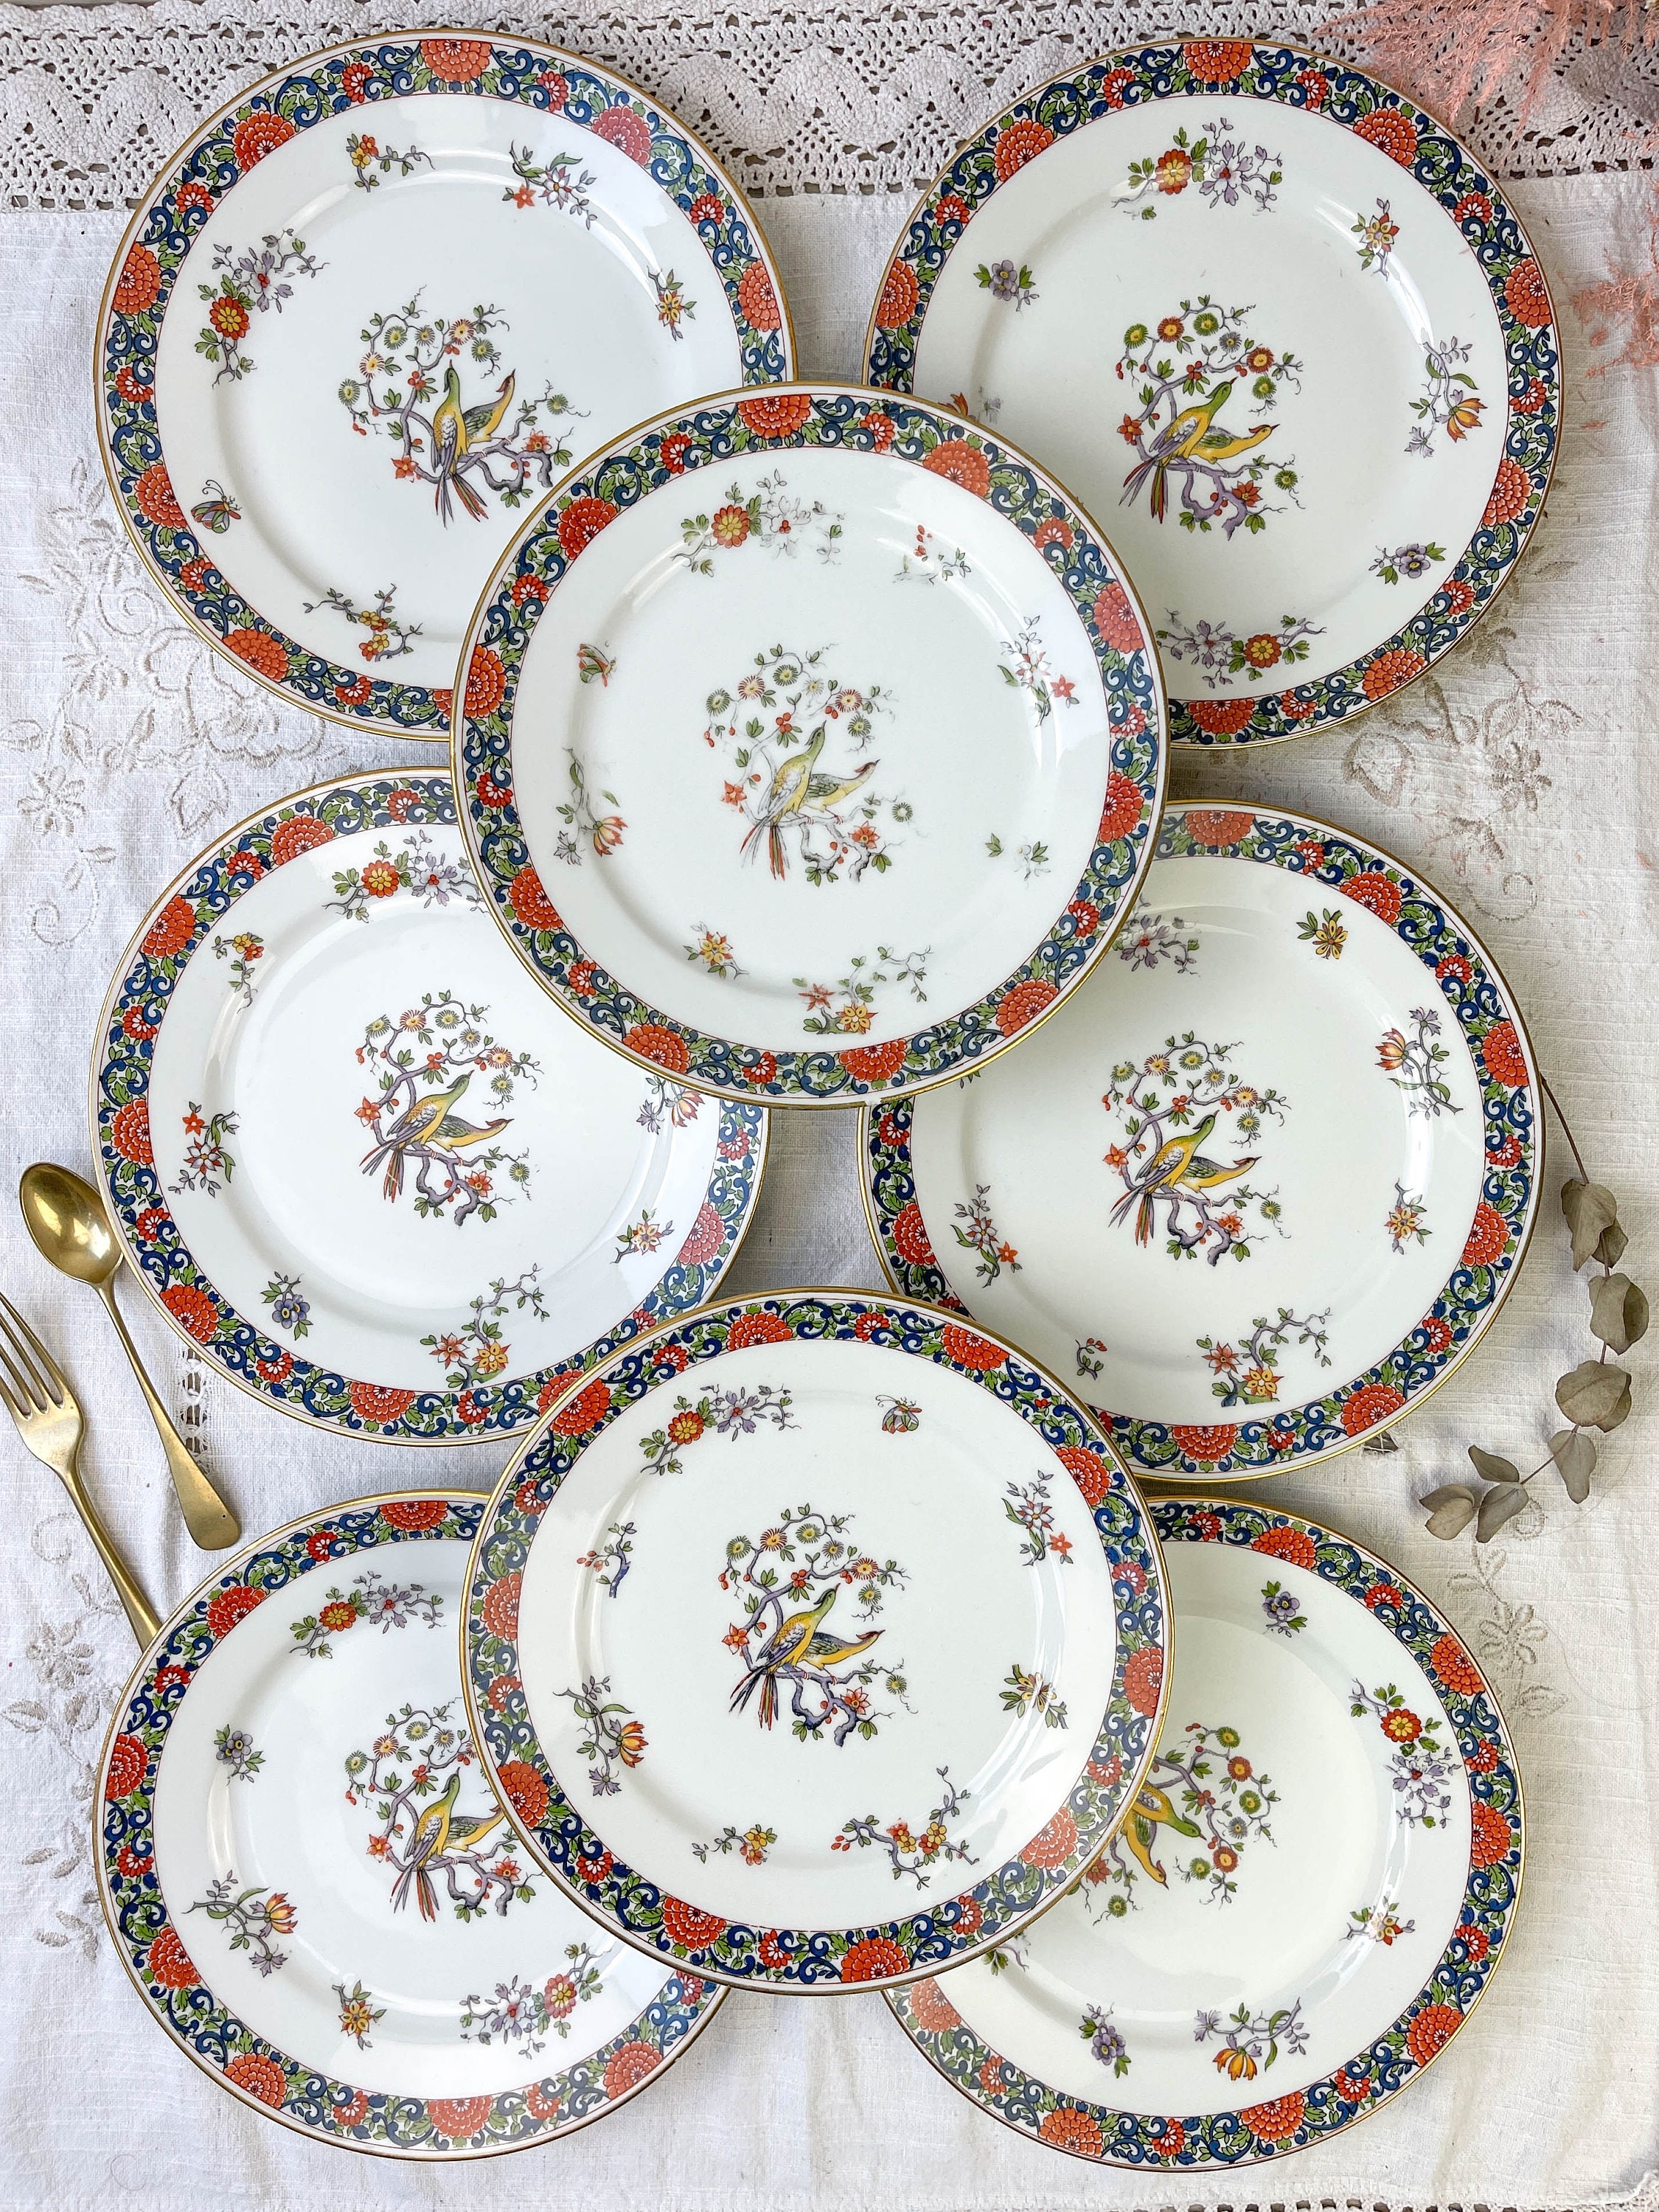 8 Assiettes Plates Porcelaine Chauvigny Limoges Motif Oiseau ~ Vaisselle Vintage Française Porcelain